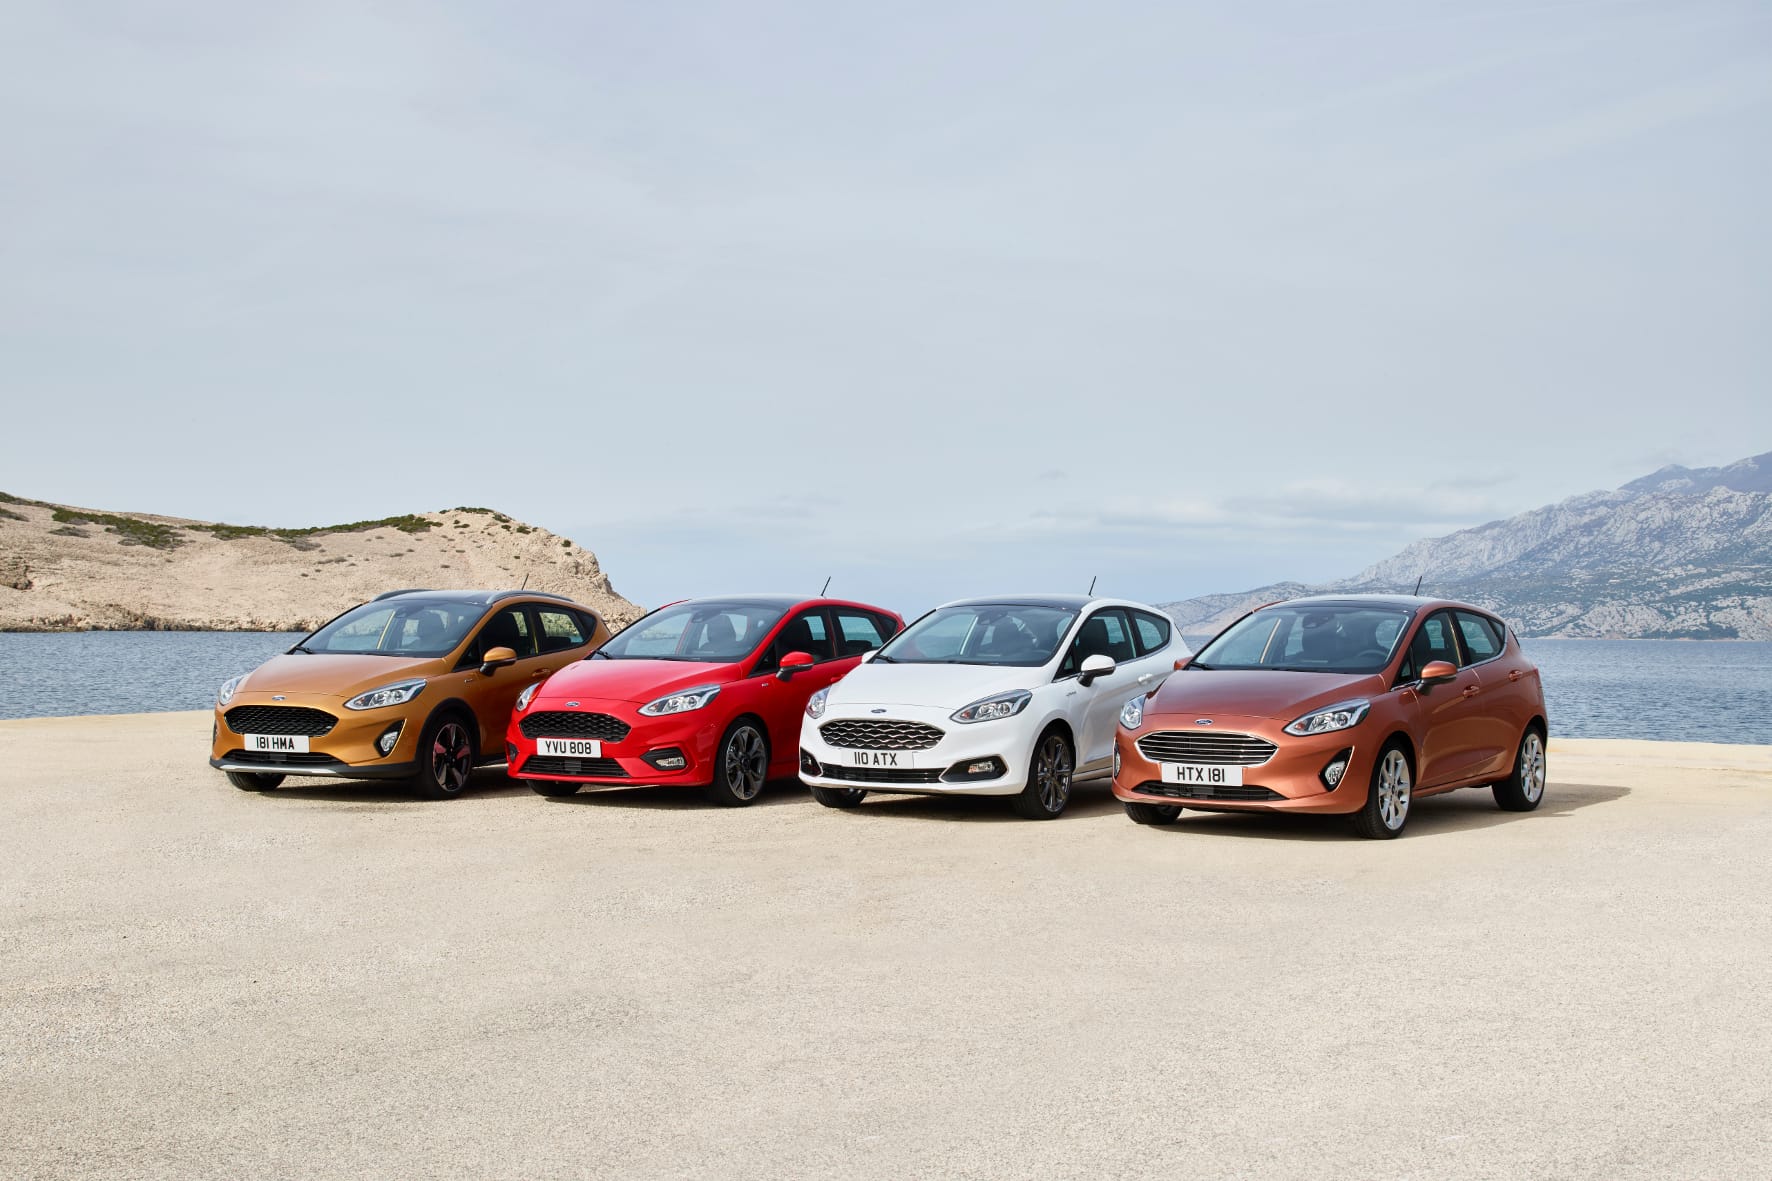 Achte Generation des Ford Fiesta steht in den Startlöchern